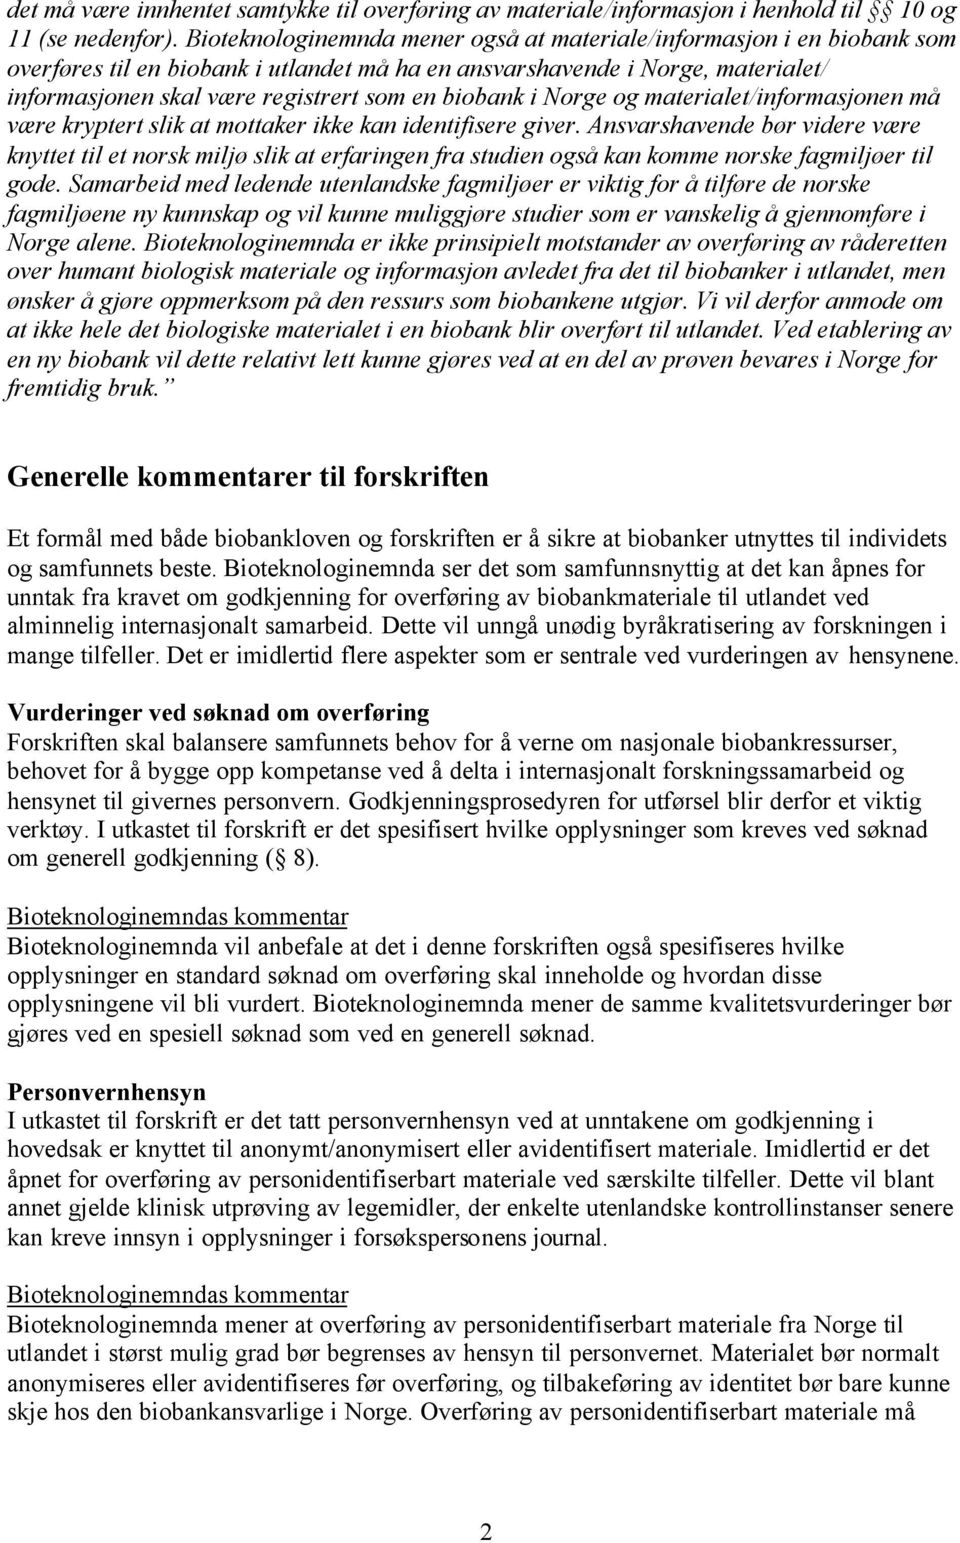 biobank i Norge og materialet/informasjonen må være kryptert slik at mottaker ikke kan identifisere giver.